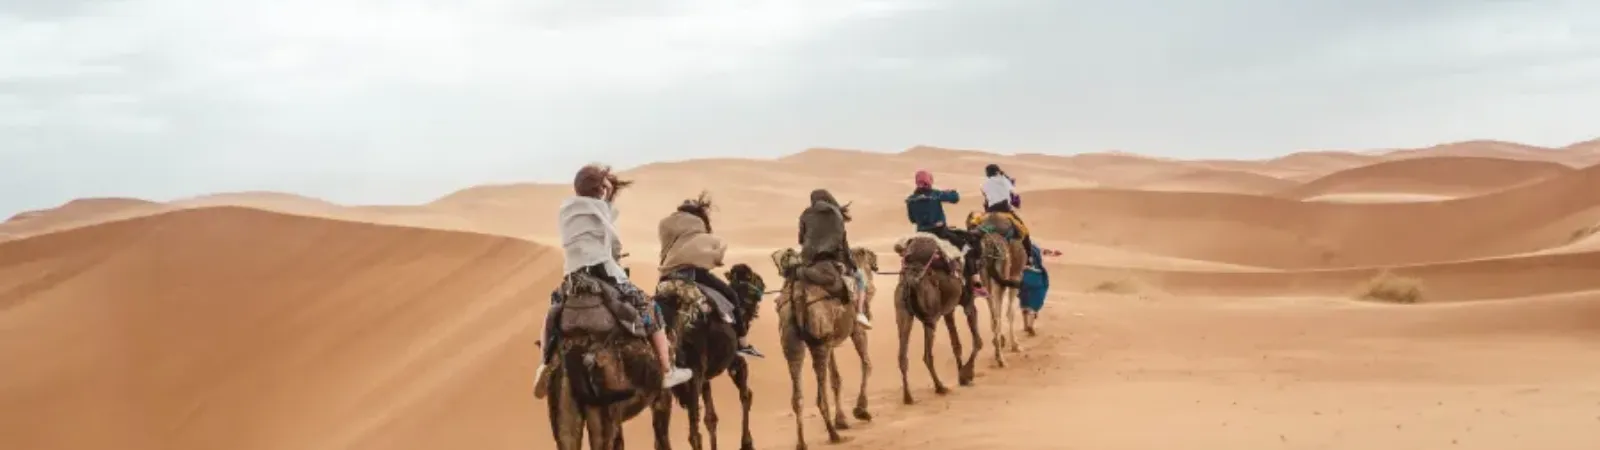 Atlas Desert Tours In Morocco